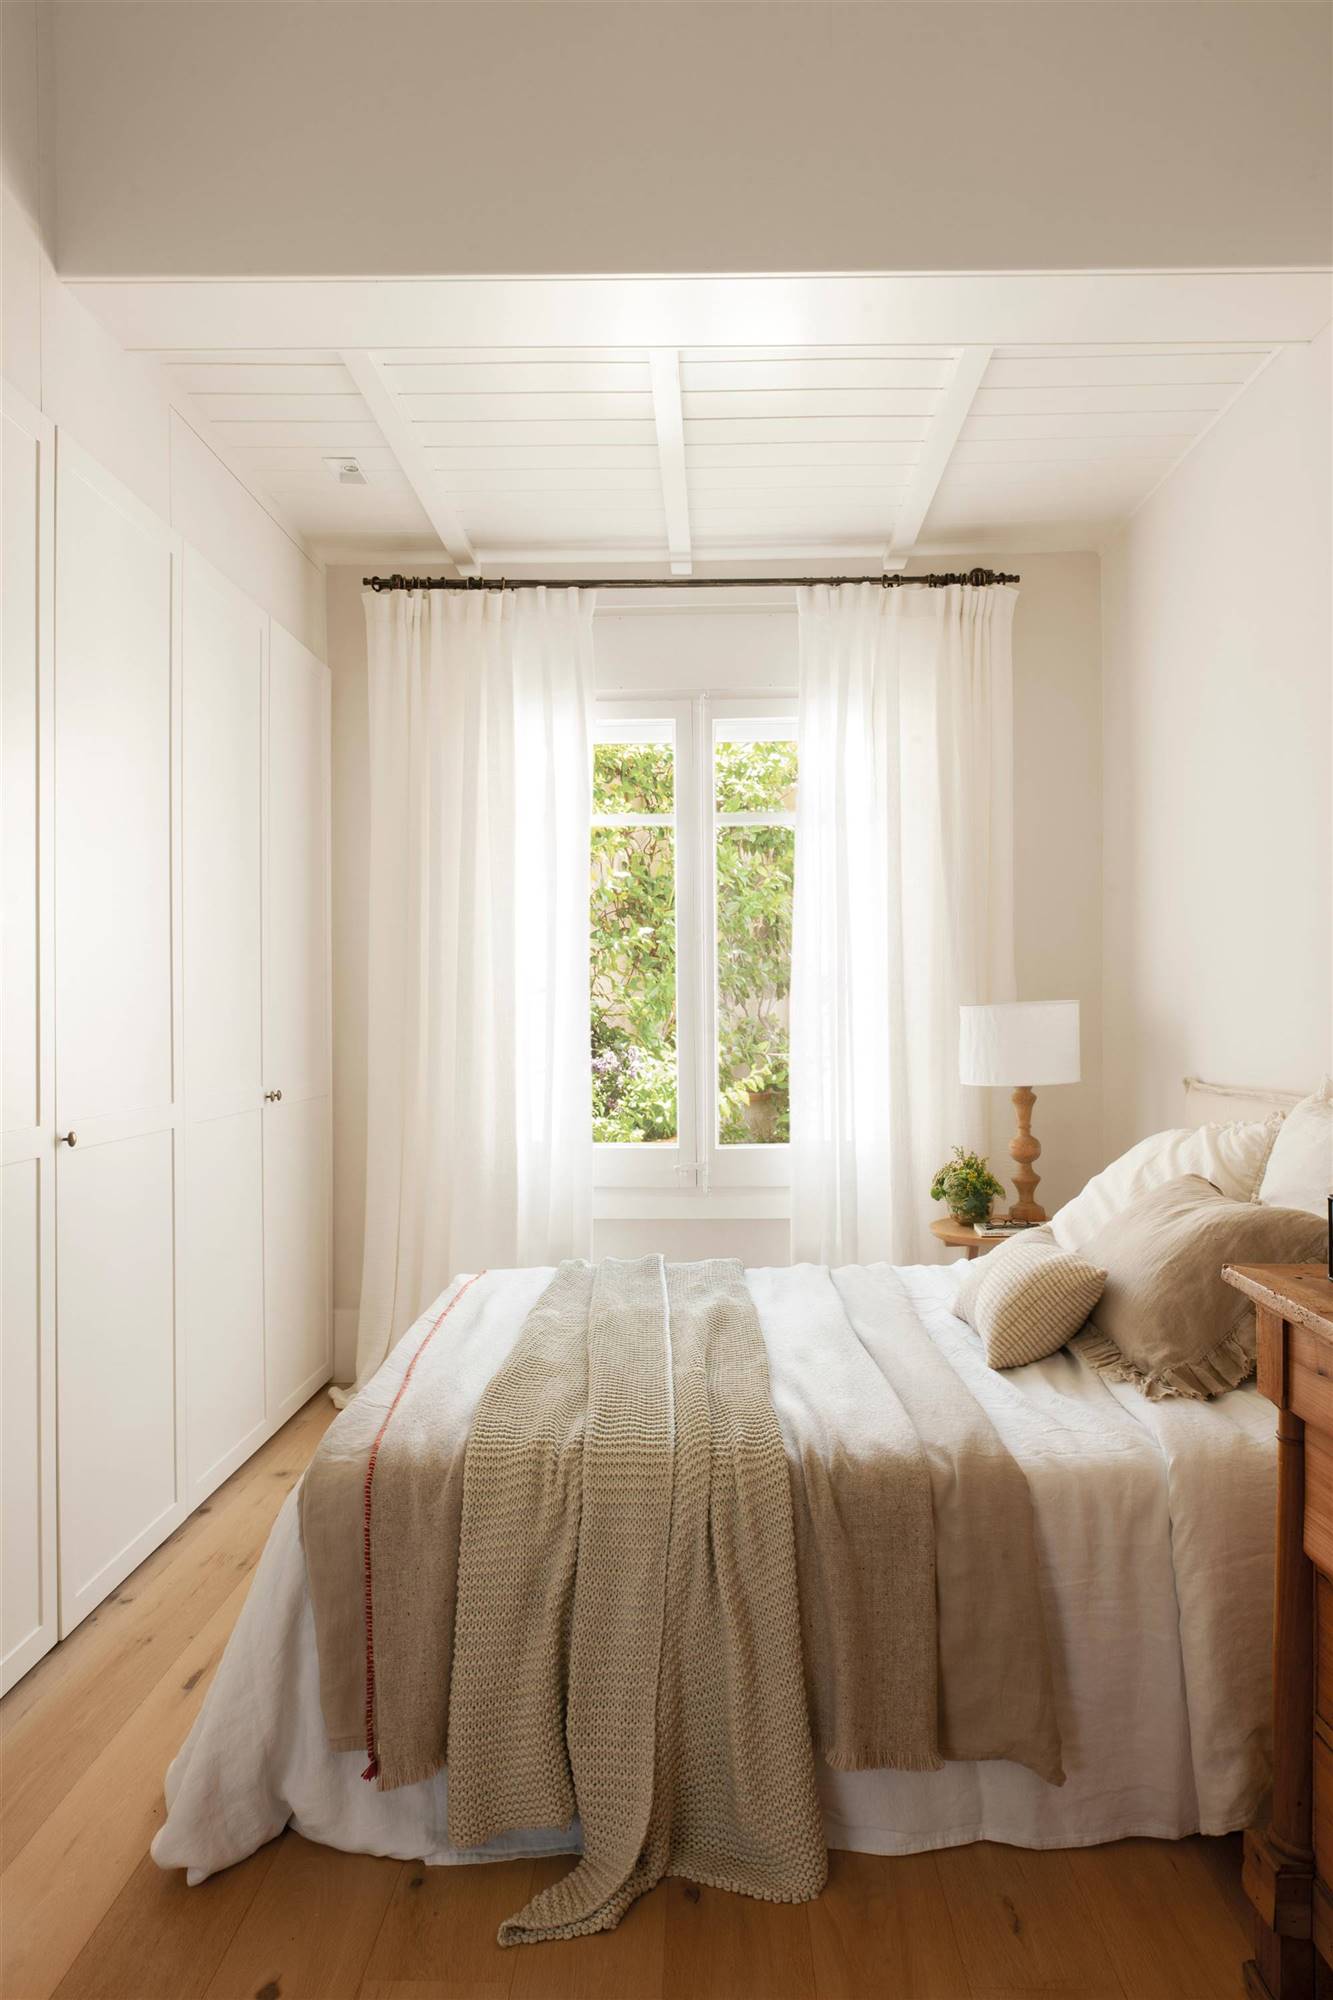 Dormitorio decorado con ropa de cama neutra que le da amplitud y calidez.